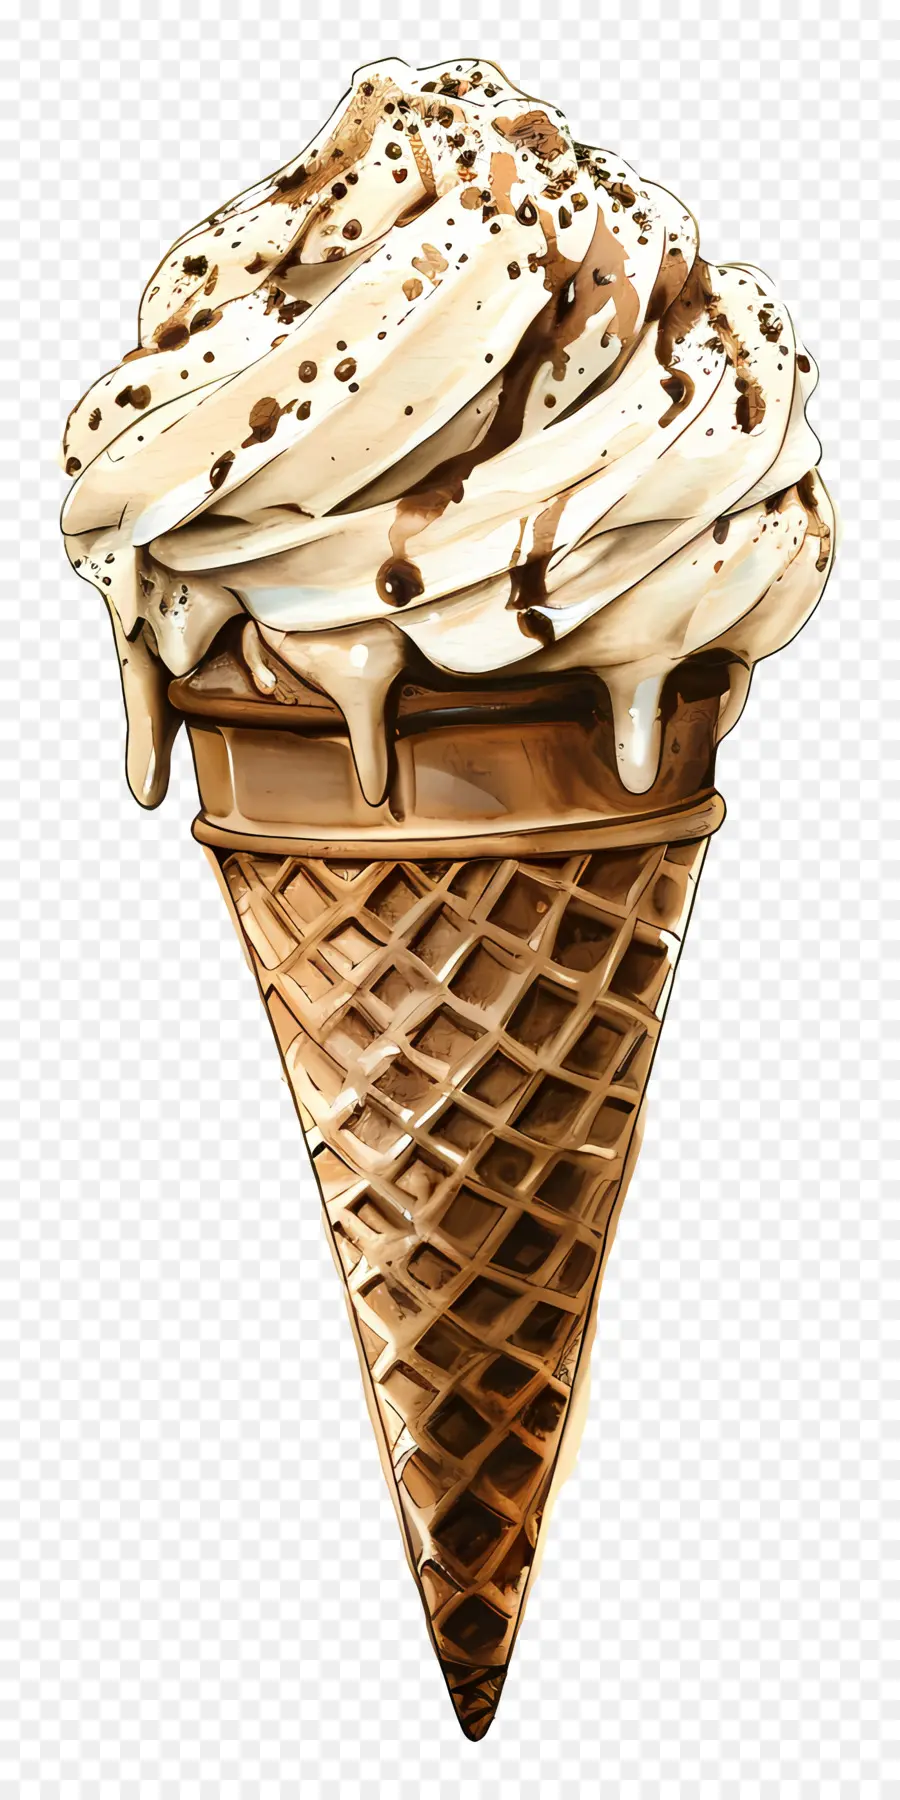 cono gelato al cioccolato gelato gelato conco cono panna montata ciliegia - Disegno cono gelato al cioccolato con ciliegia